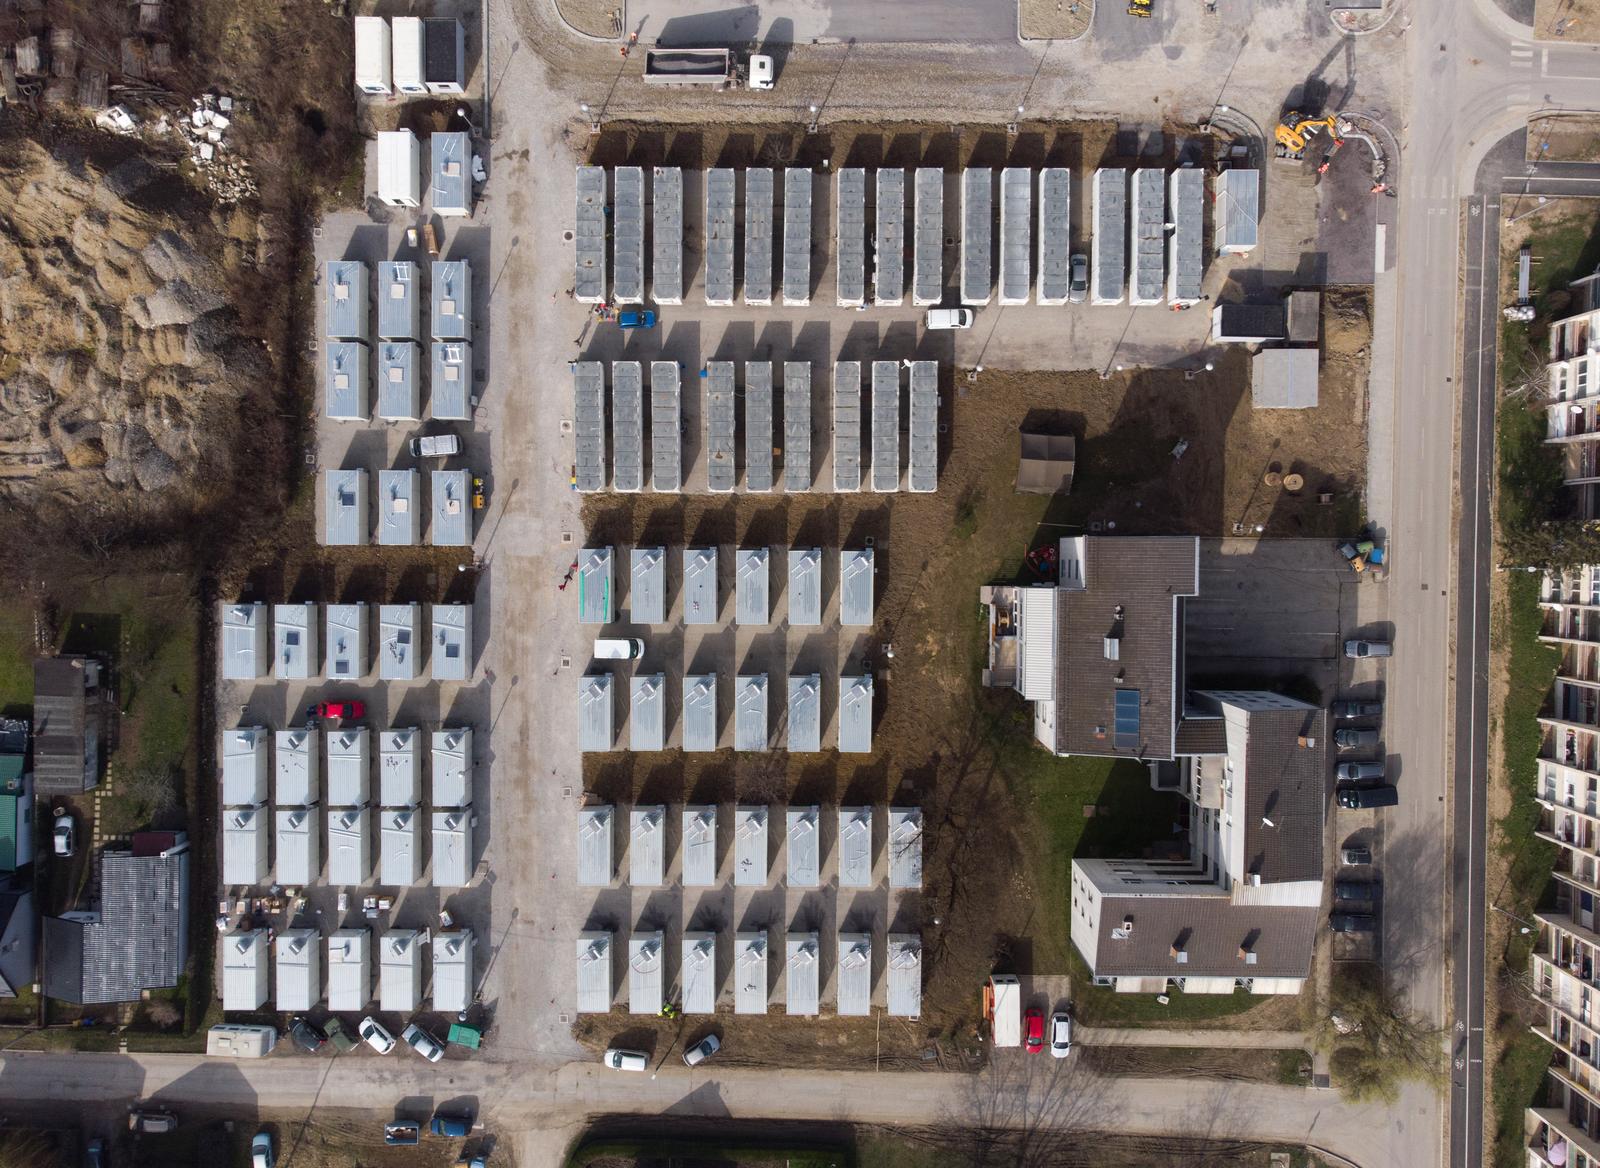 24.02.2021., Petrinja - Fotografija snimljena iz zraka prikazuje kontejnersko naselje na Sajmistu u kojemu su smjesteni ljudi cije su nekretnine stradale u potresu koji je pogodio Sisacko-moslavacku zupaniju 29.12. 2020. godine. Photo: Luka Stanzl/PIXSELL